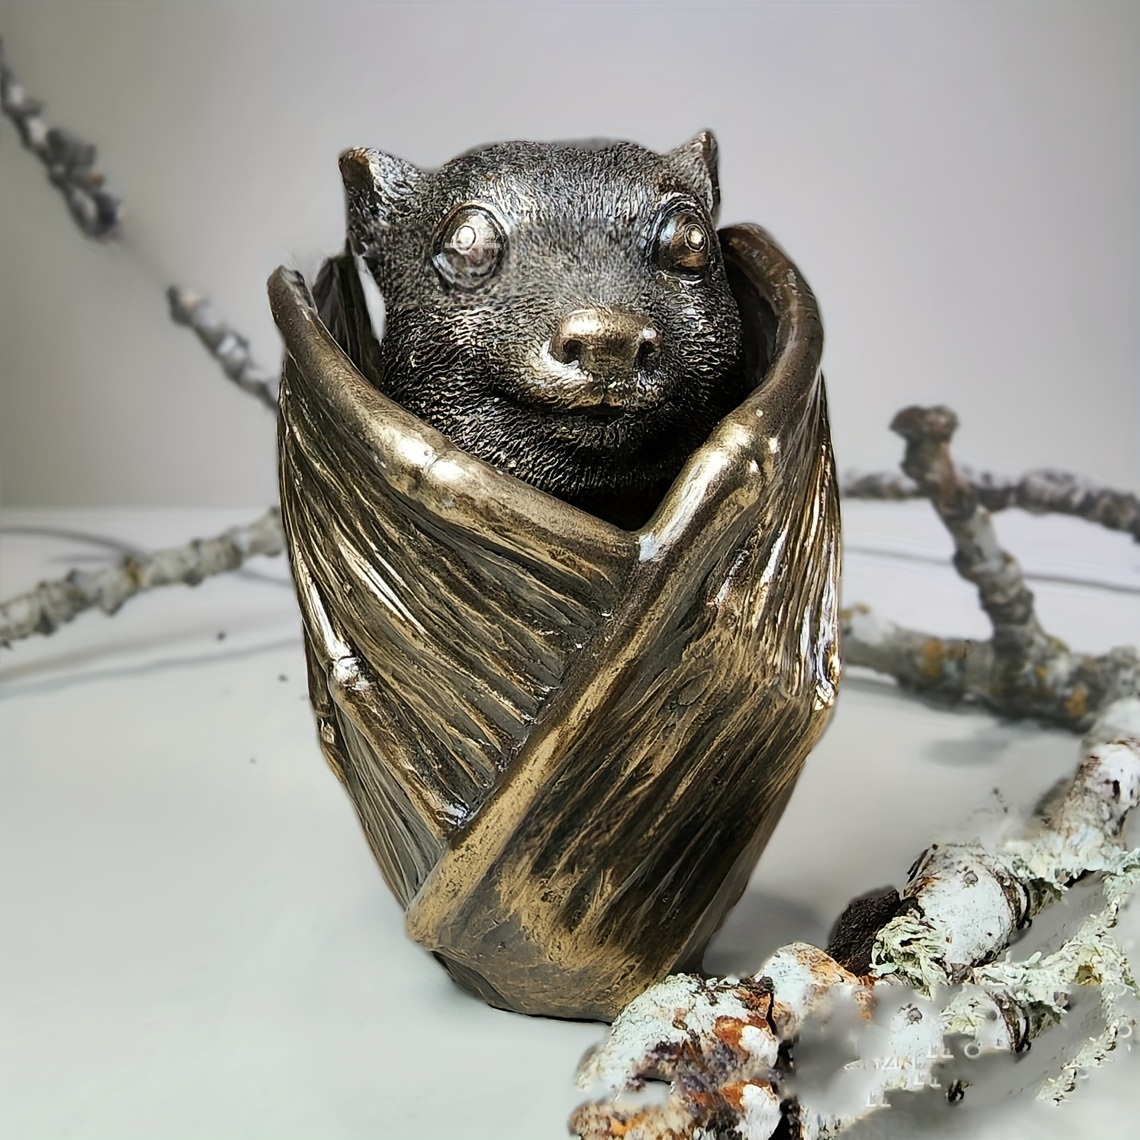 

Halloween Bat Decorative Jewelry Organizer - Resin Gothic Home Decor Bat Figurine Trinket Storage - Unique Artisan Crafted Bat Sculpture Jewelry Holder